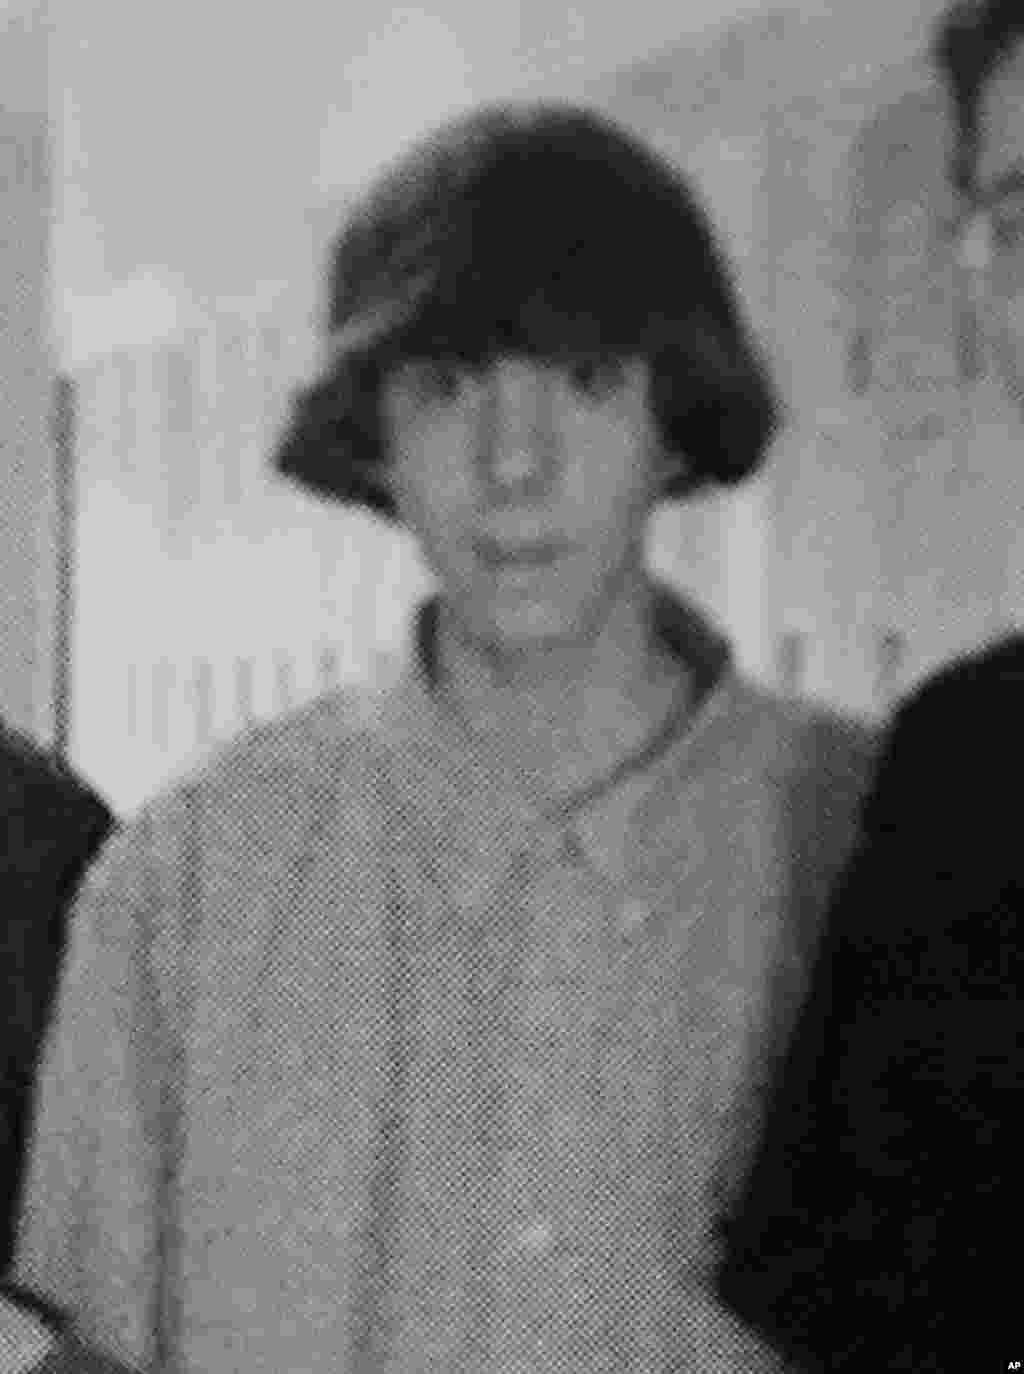 این عکس قدیمی آدام لنزا (شخص مهاجم) در یک تصویر گروهی است در کلاس است. این عکس در کتاب تصاویر دبیرستان نیوتاون وجود دارد. لنزا پس از کشتن مادرش در منزل، به مدرسه حمله کرد. 